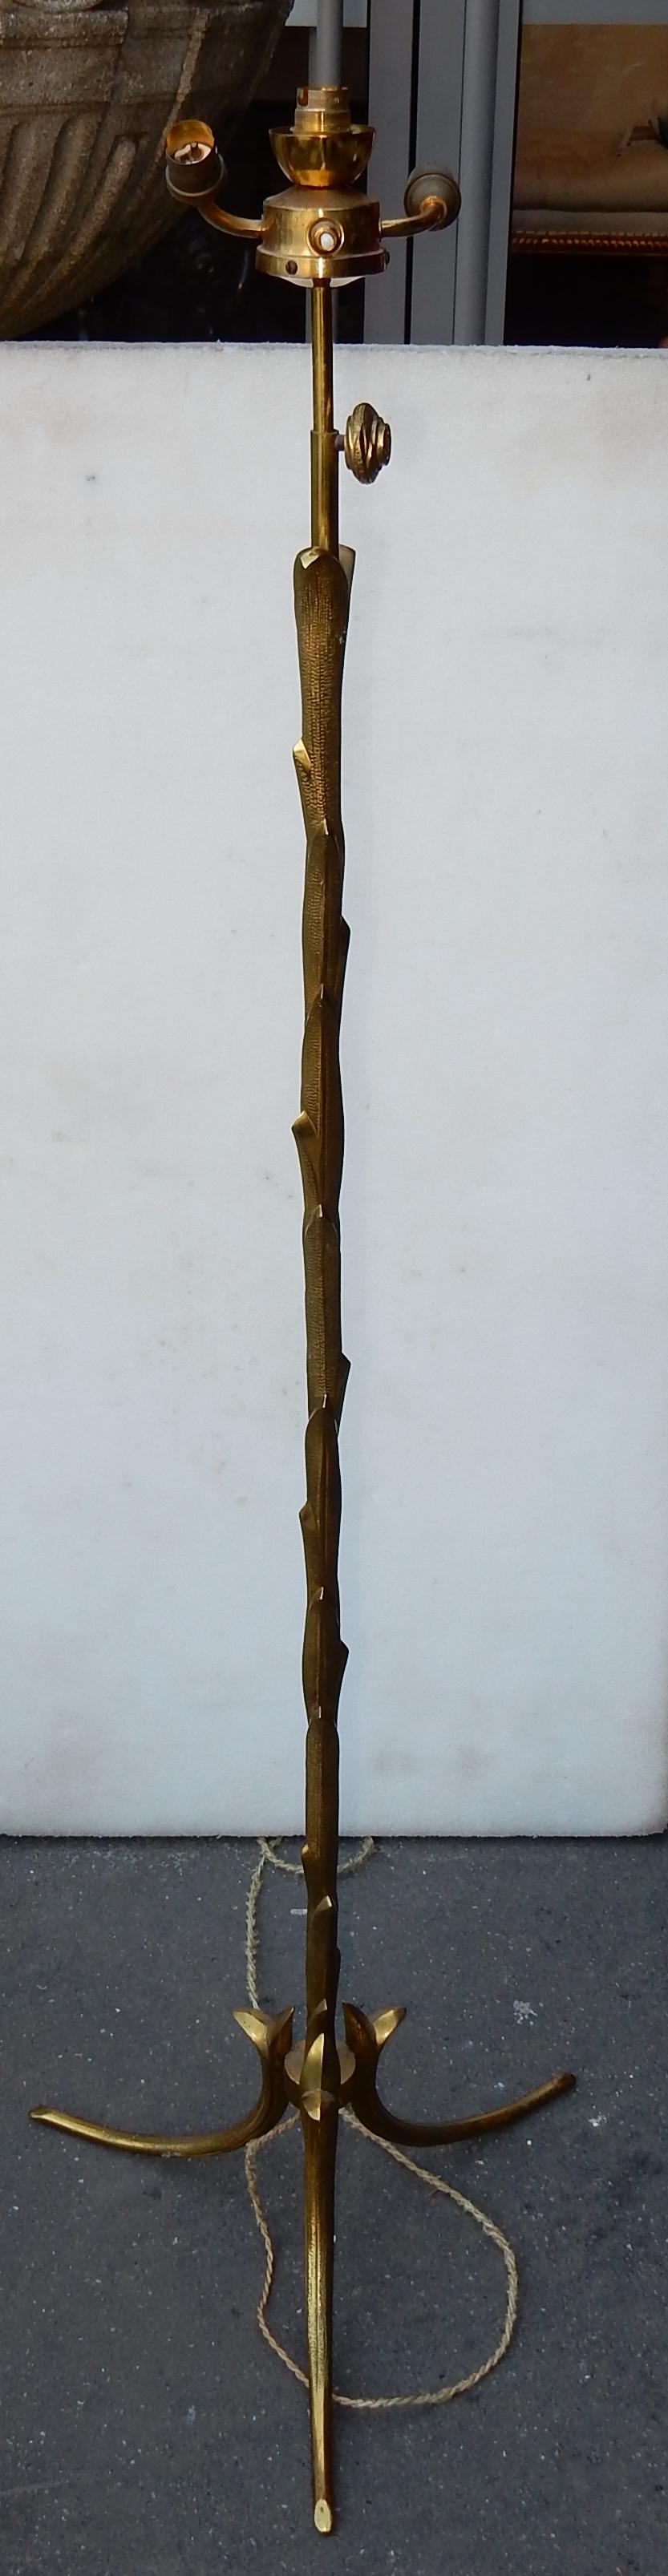 Lampadaire en bronze et laiton doré, bon état, circa 1950-1970, éléments vissés, a été a décoration de palmier réglable.